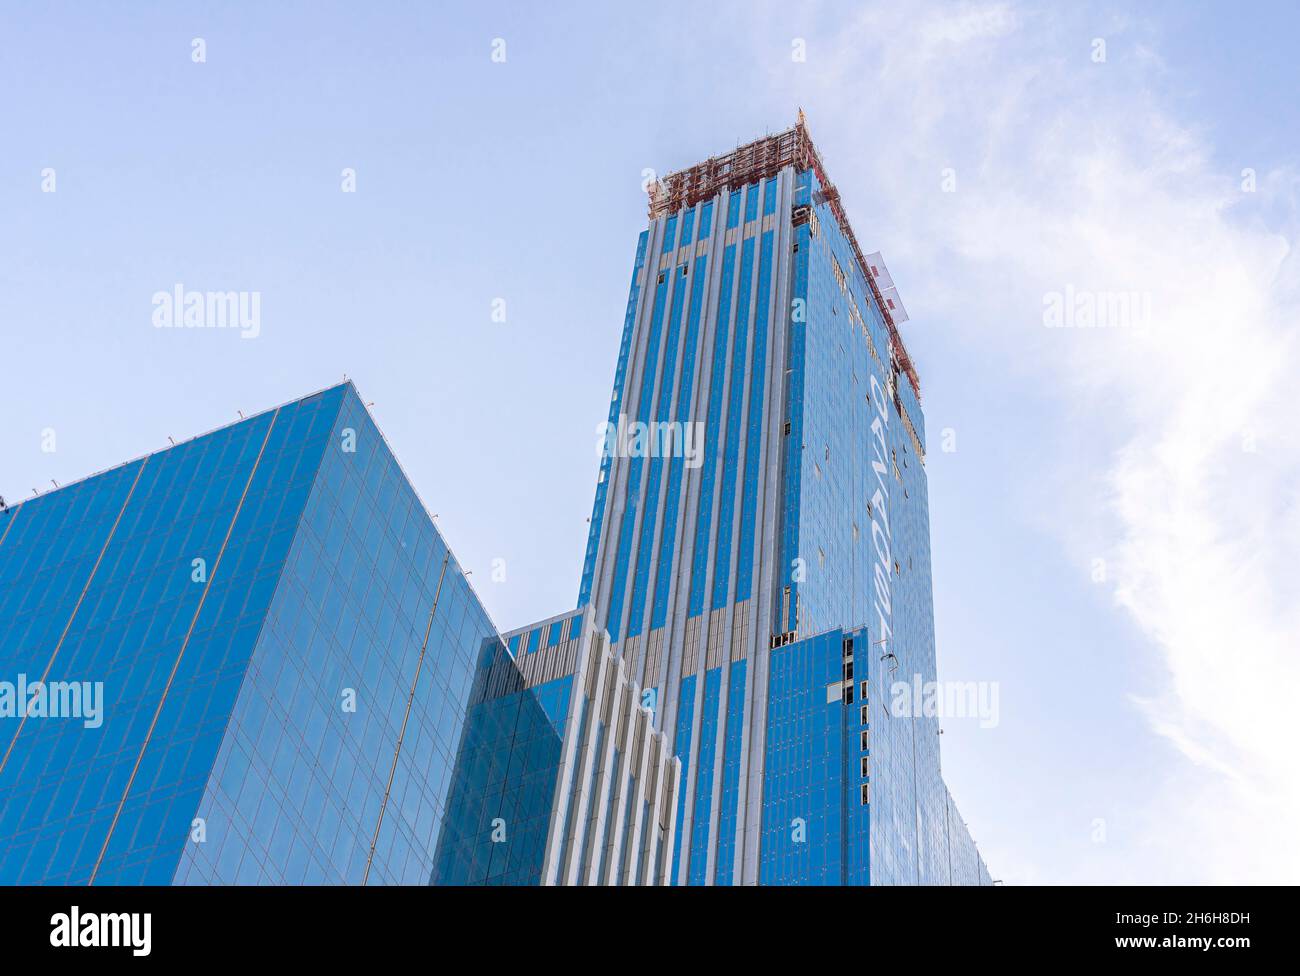 Qazaqstan, tallest building in Central Asia in a mixed-use development complex Abu-Dabi plaza in Nur-Sultan, Kazakhstan. Skyscraper under development. Stock Photo